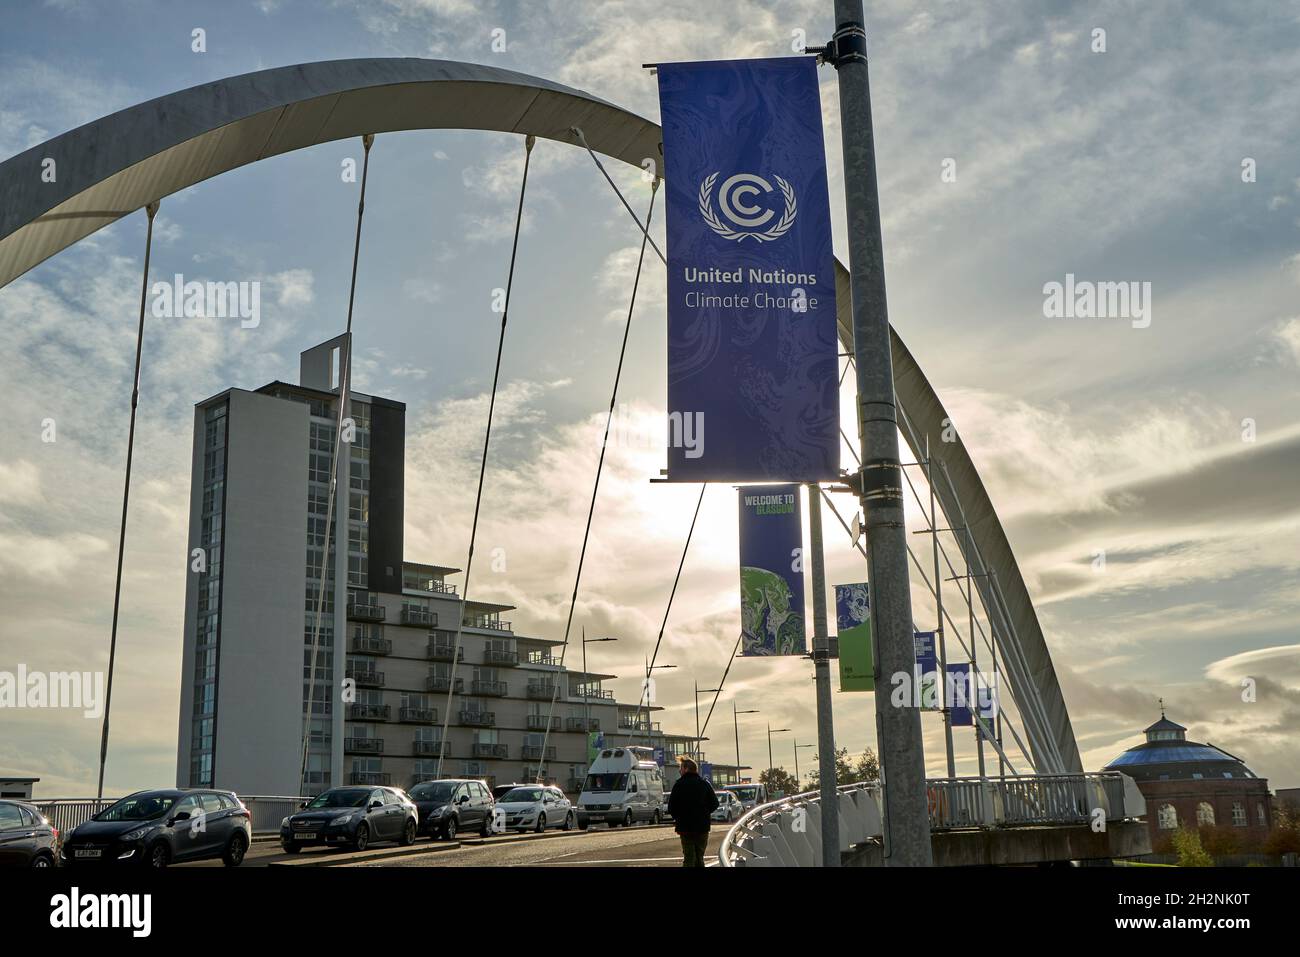 Les panneaux de la Conférence des Nations Unies sur les changements climatiques apparaissent autour de Glasgow à l'approche de la COP26 qui se tiendra en novembre 2021. Banque D'Images